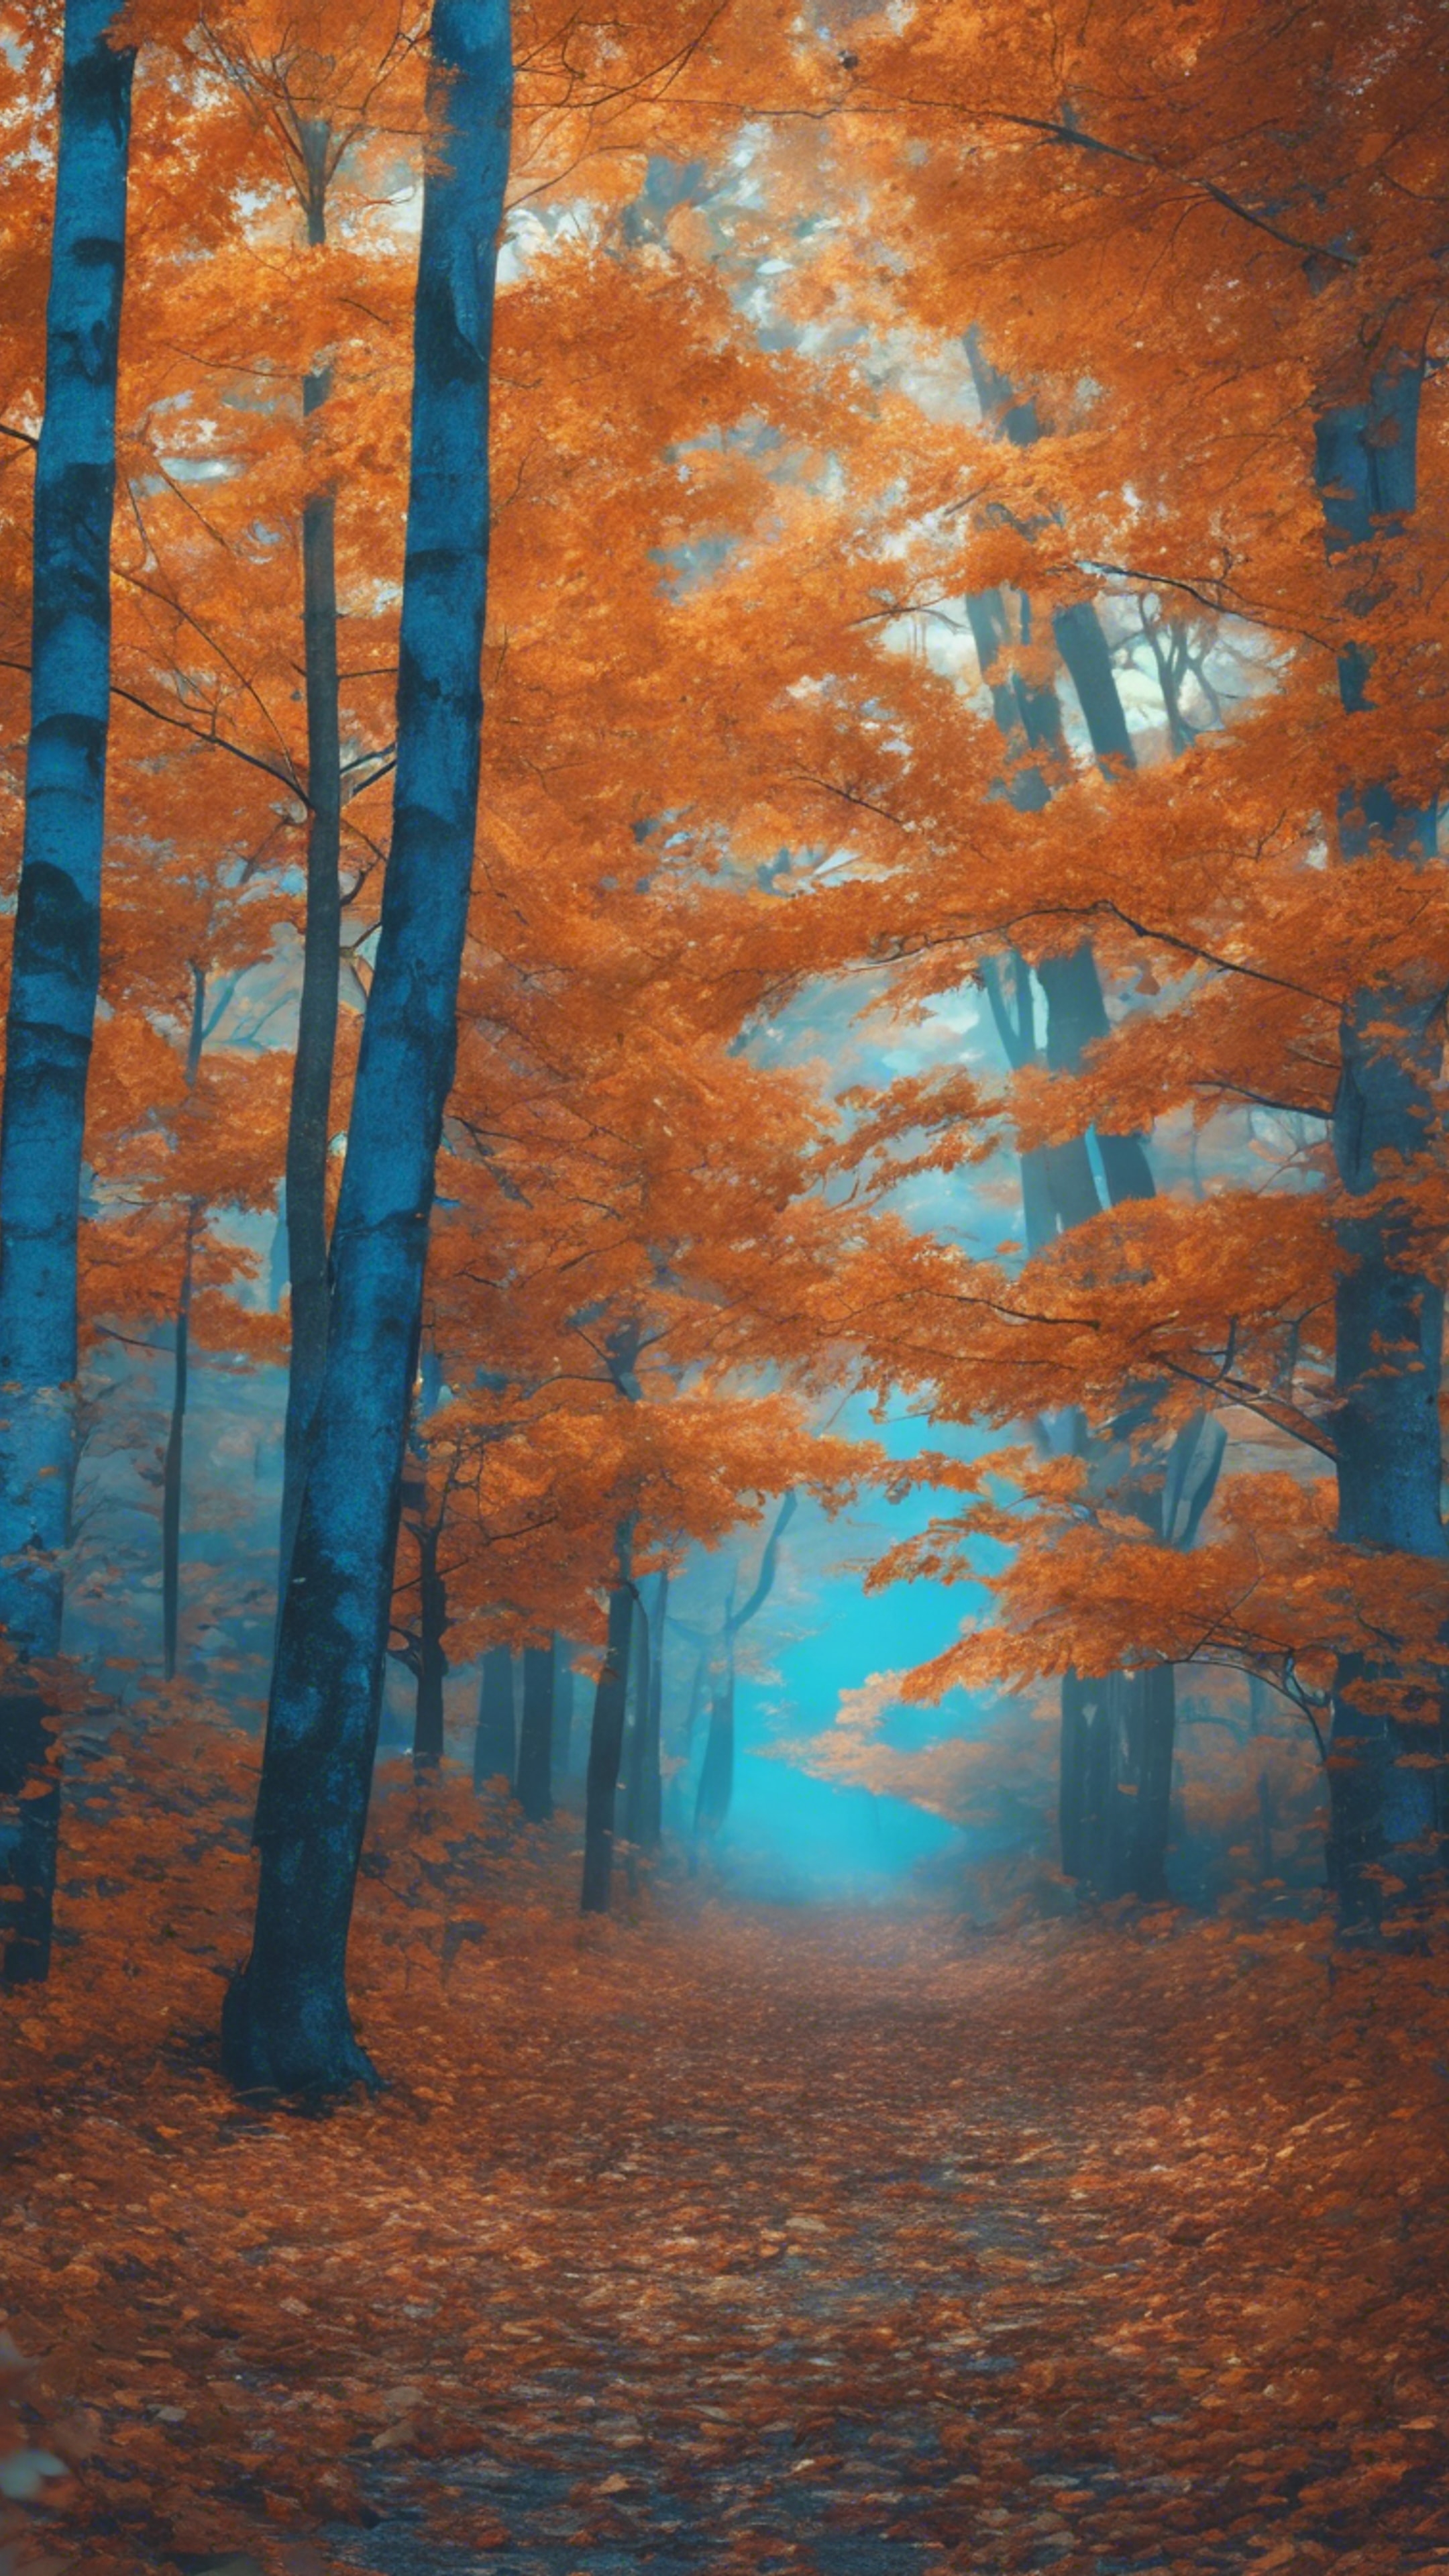 A lush blue forest under orange autumn leaves falling gently.壁紙[0c2ebd3bbdd5412f95df]